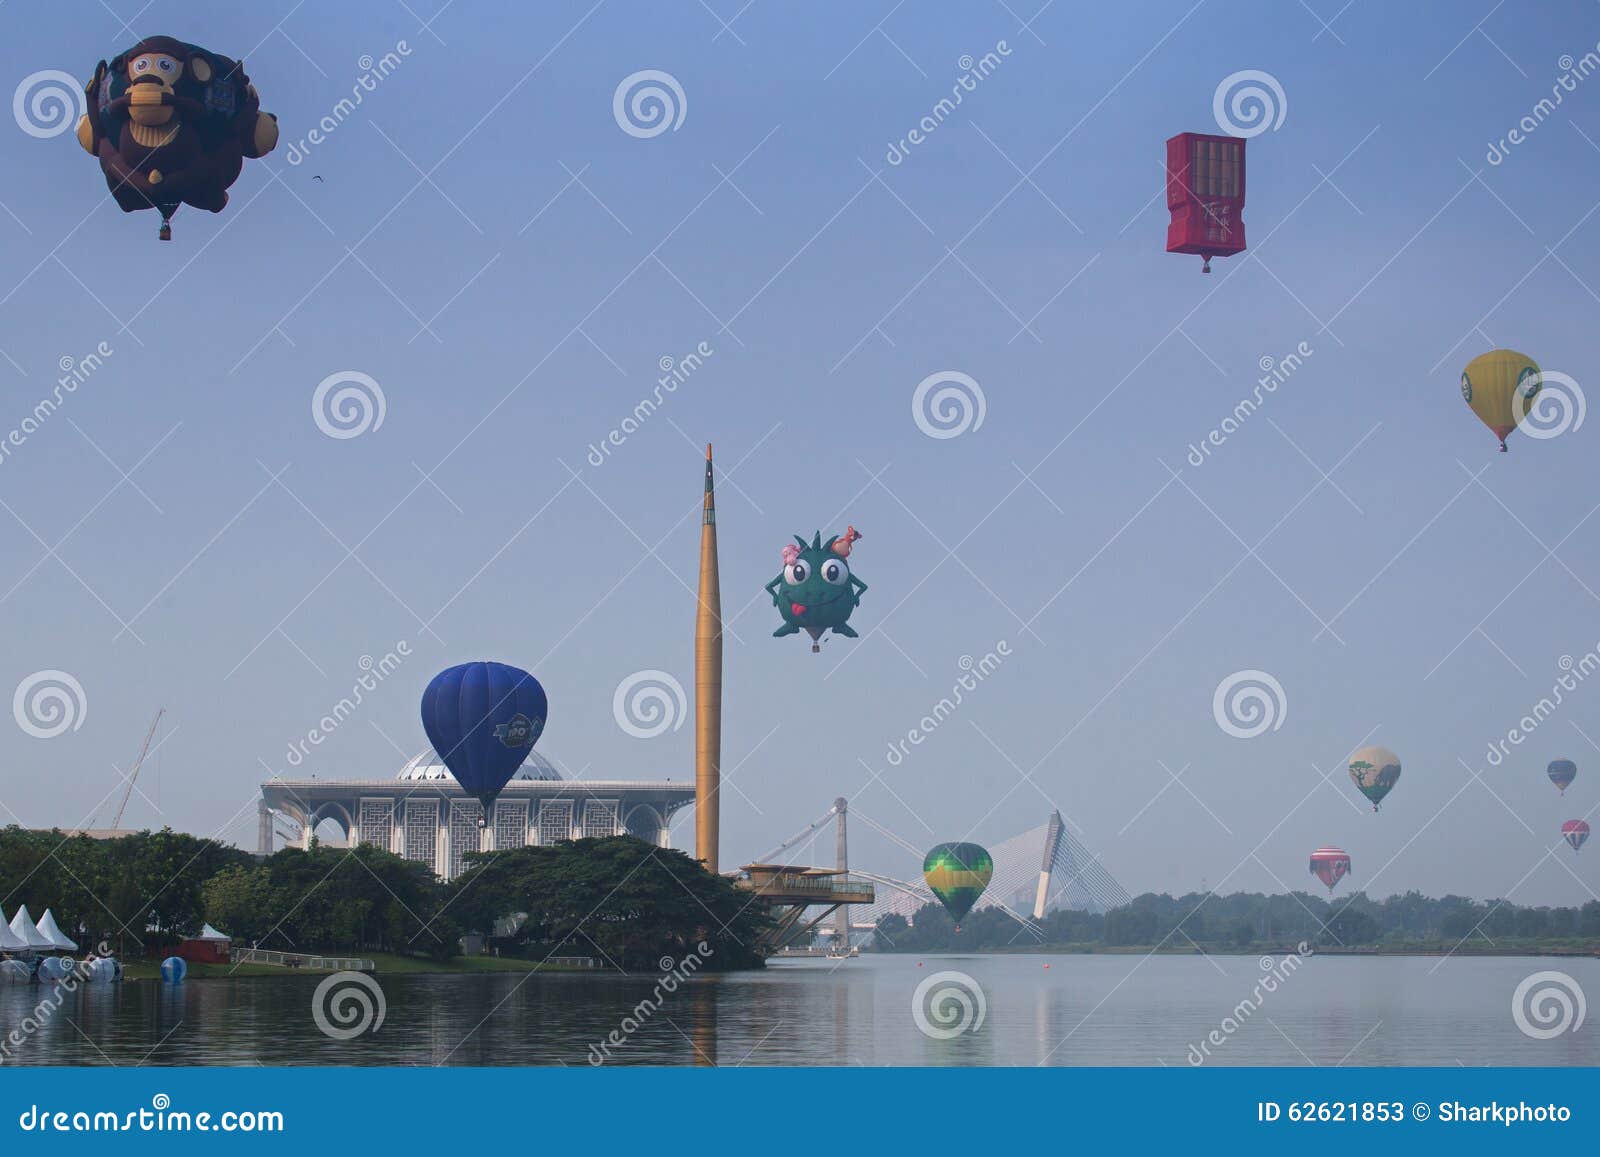 Luftballong varma putrajaya. Fiesta för ballong Putrajaya internationell för varm luft